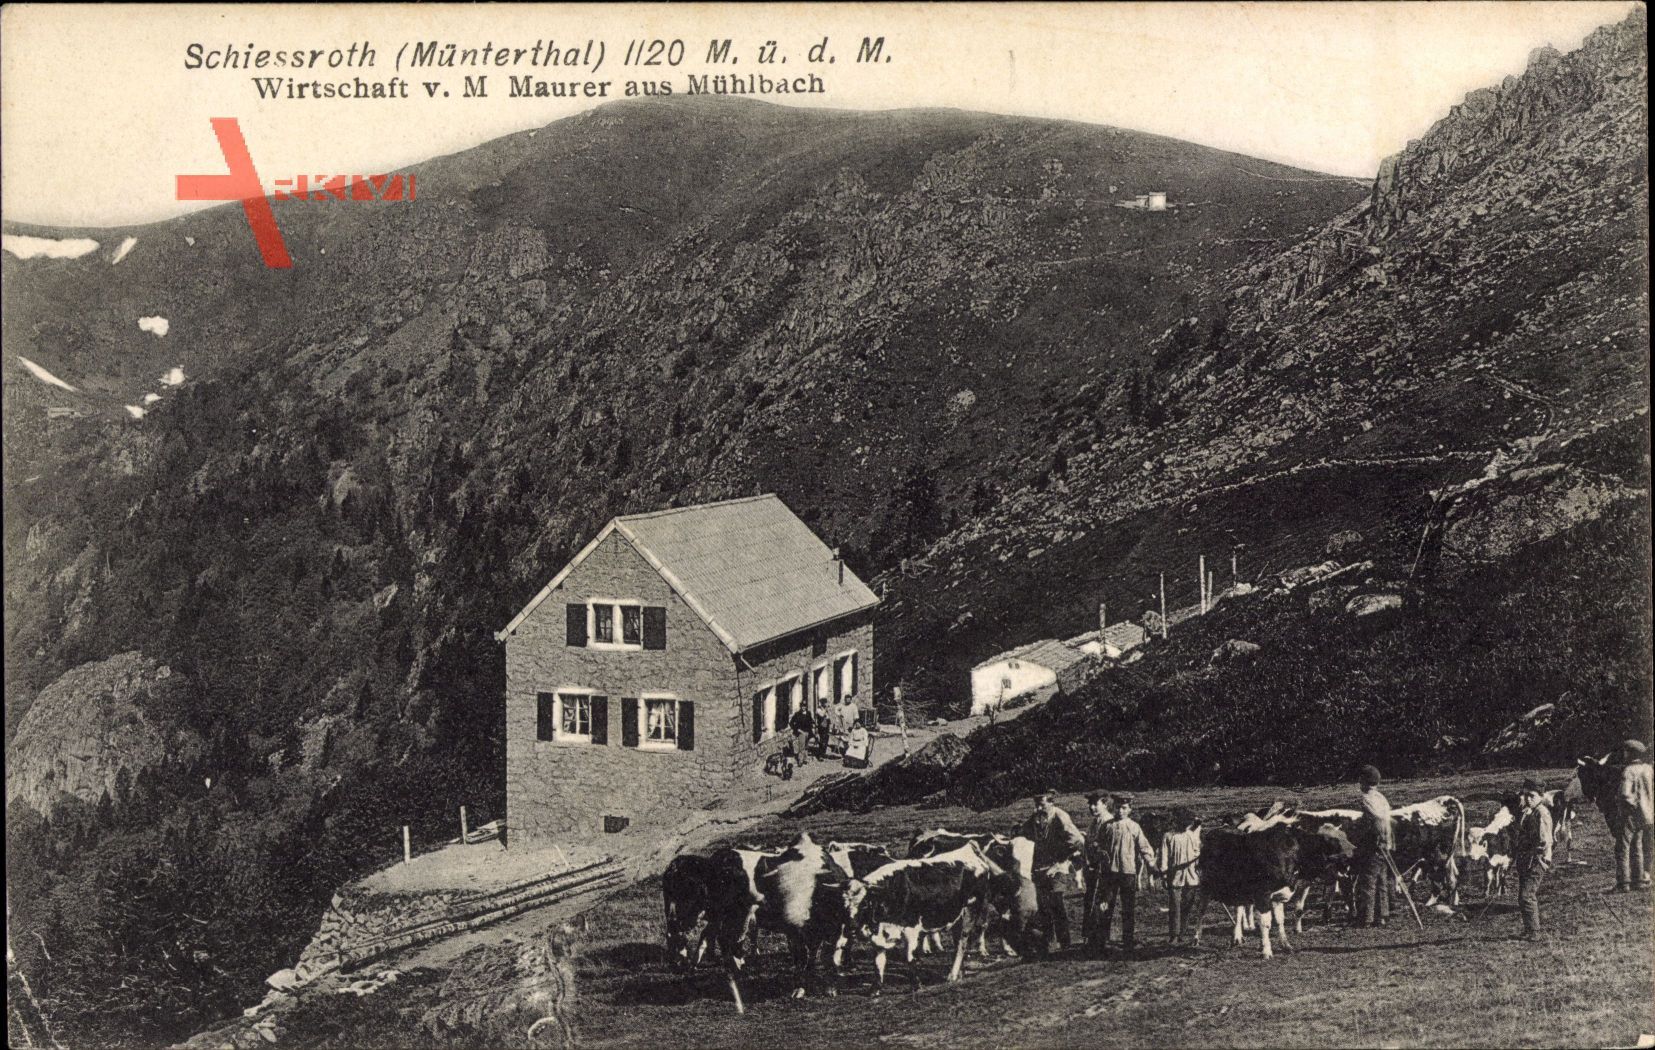 Schiessroth Münterthal Haut Rhin, Wirtschaft von M. Maurer aus Mühlbach